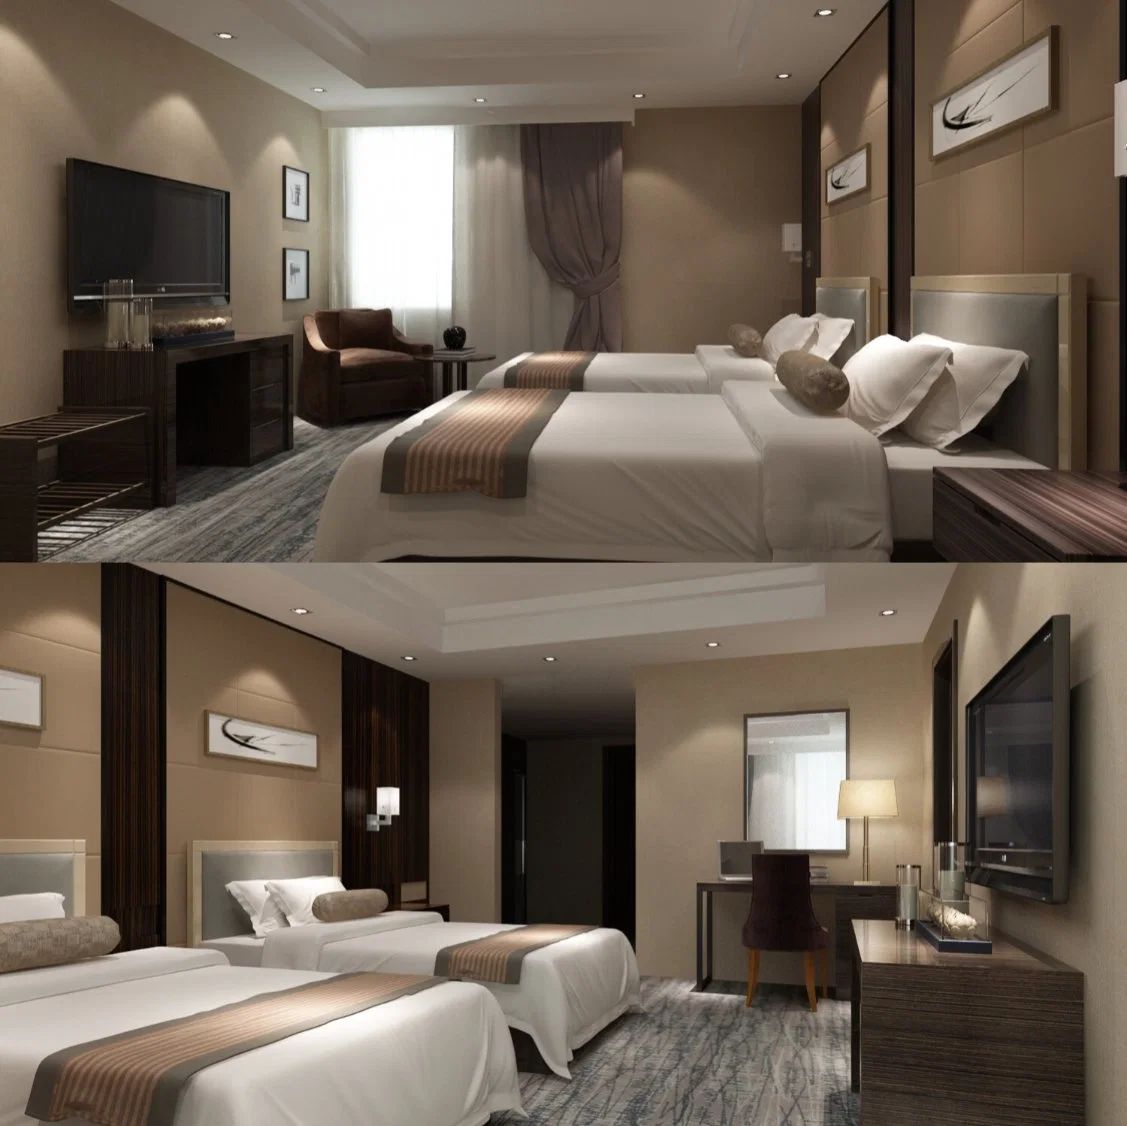 Feuchtigkeitsbeständig Laminat Sperrholz mit Furnier Hotel Schlafzimmer Möbel für 5-Sterne-Hotel-Projekt (NCHB-001001)